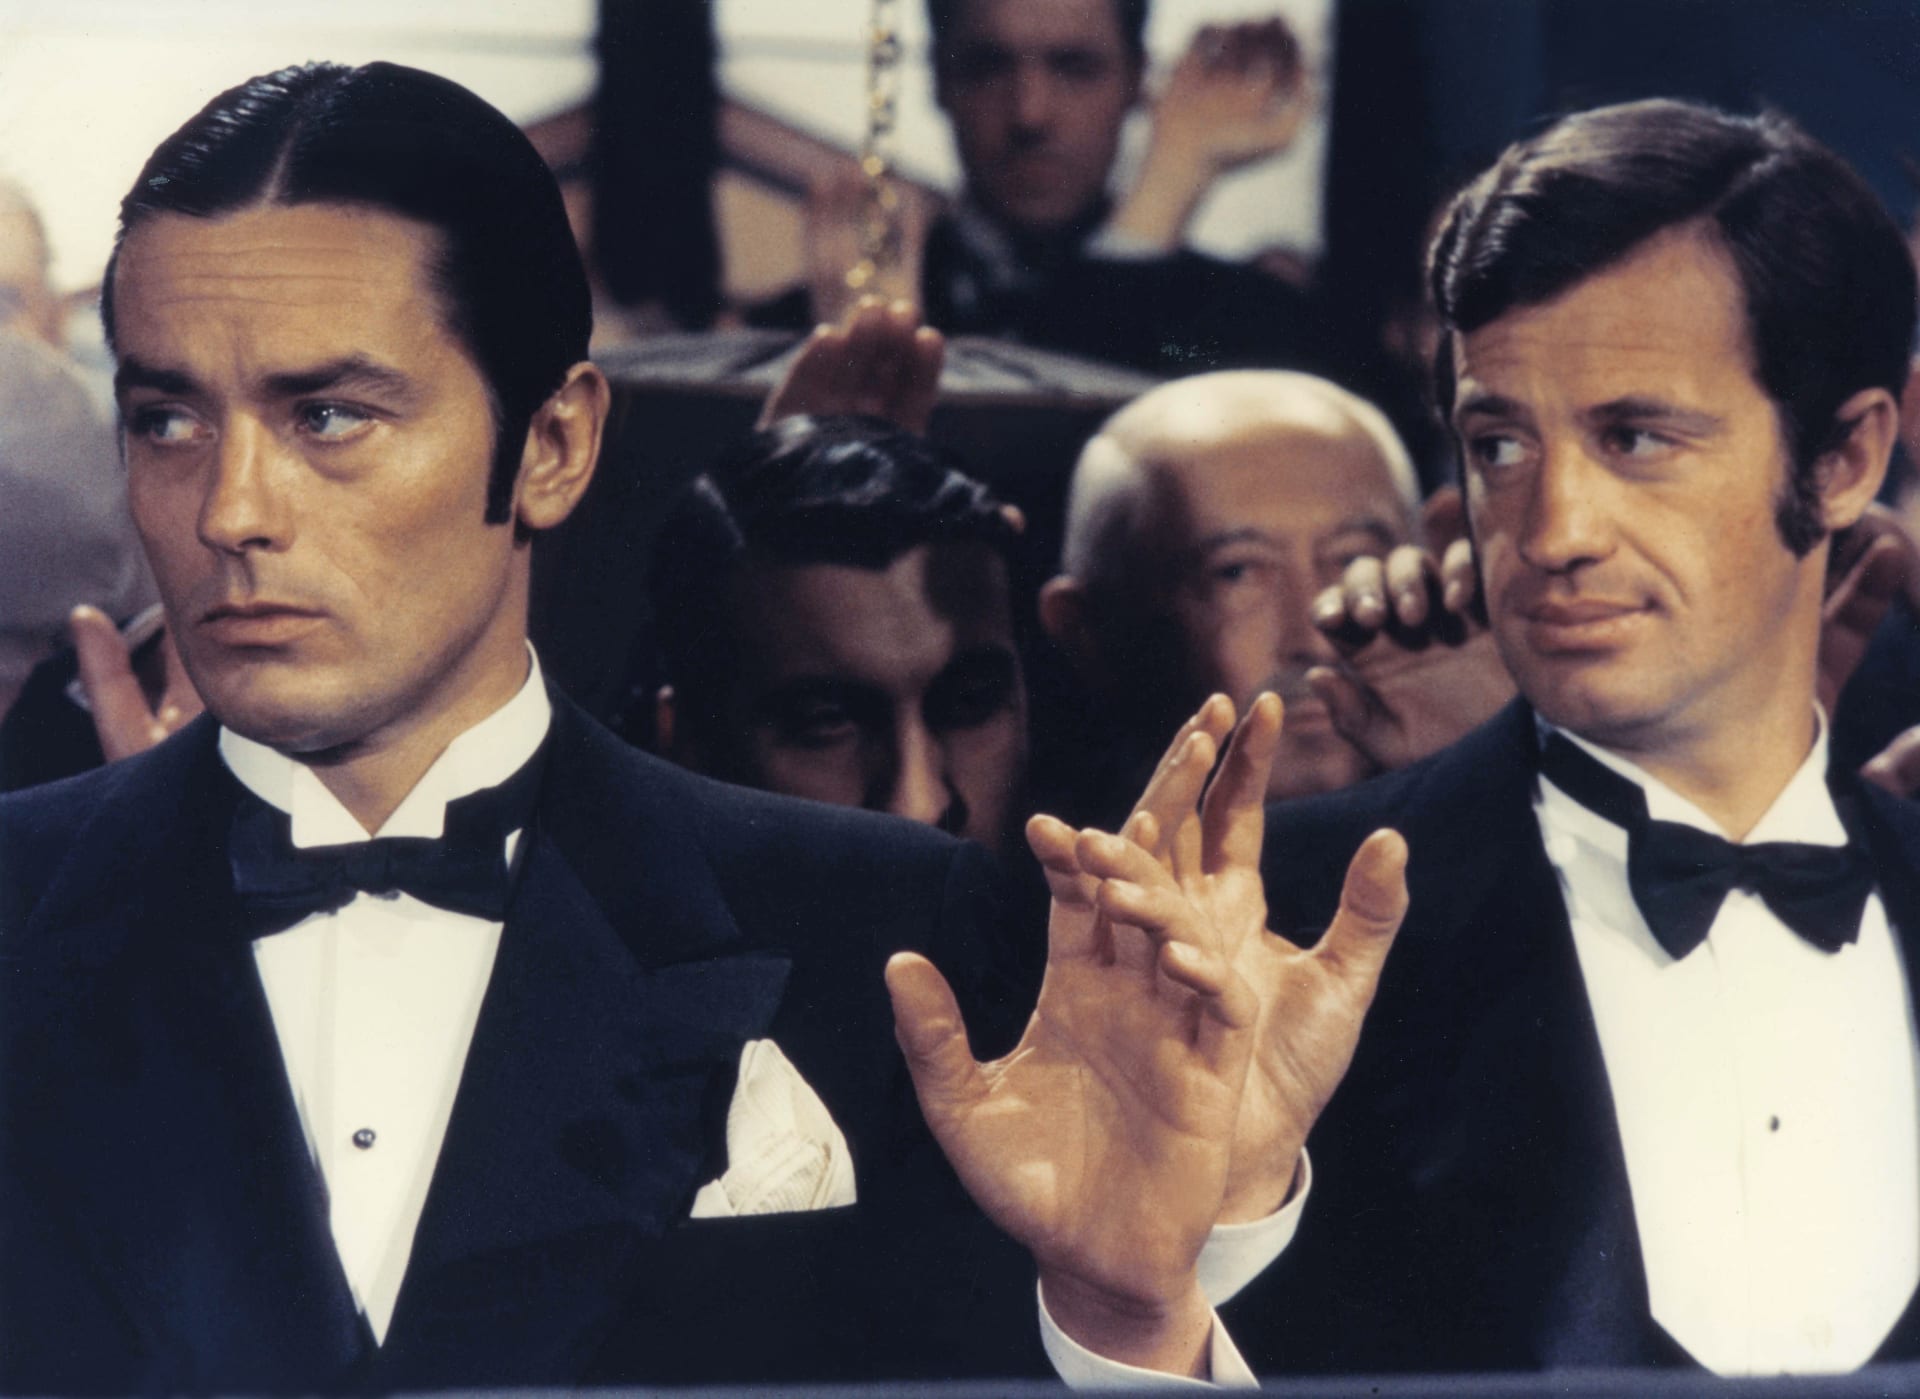 Snímek z natáčení gangsterského filmu Borsalino v roce 1969. Belmondovým partnerem ve filmu byl další slavný francouzský herec Alain Delon. Byli blízkými přáteli.